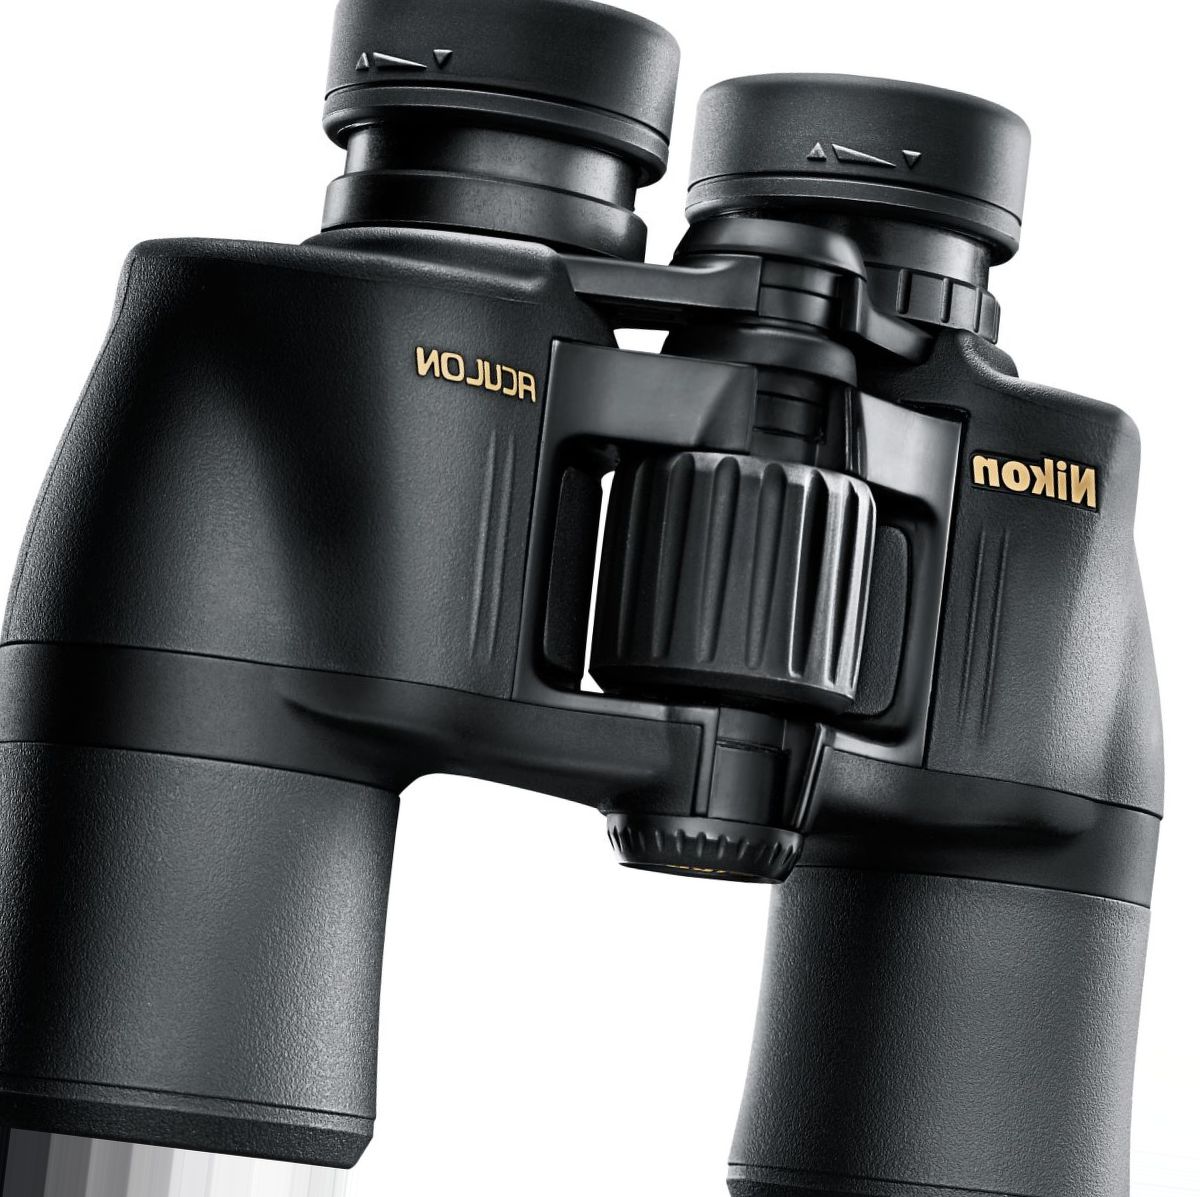 Nikon Aculon 8x42 Binoculars